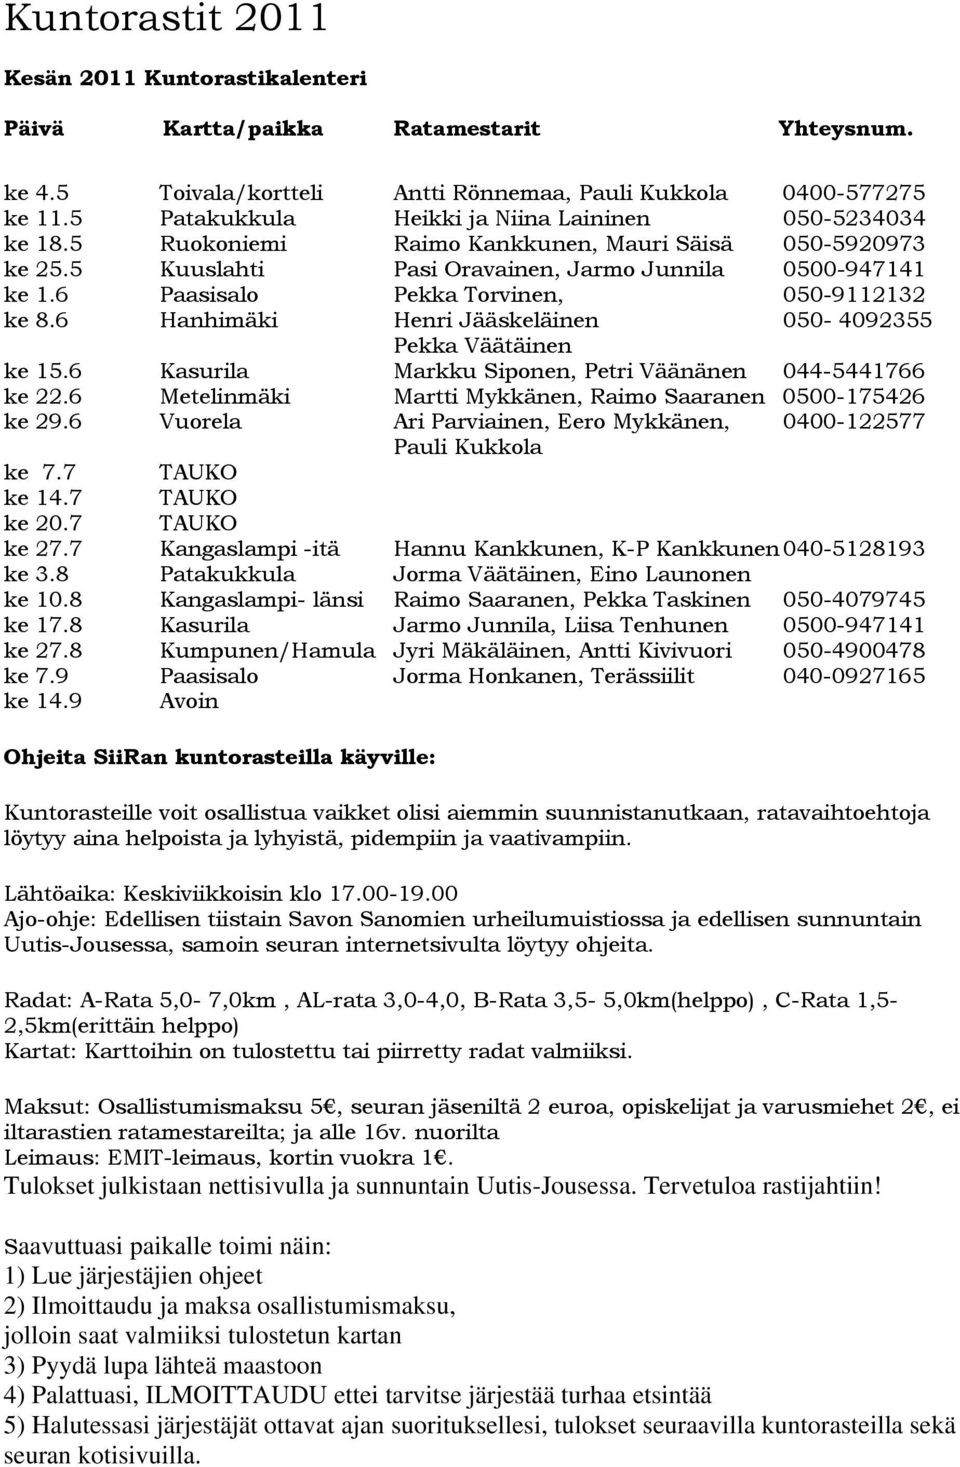 6 Paasisalo Pekka Torvinen, 050-9112132 ke 8.6 Hanhimäki Henri Jääskeläinen 050-4092355 Pekka Väätäinen ke 15.6 Kasurila Markku Siponen, Petri Väänänen 044-5441766 ke 22.